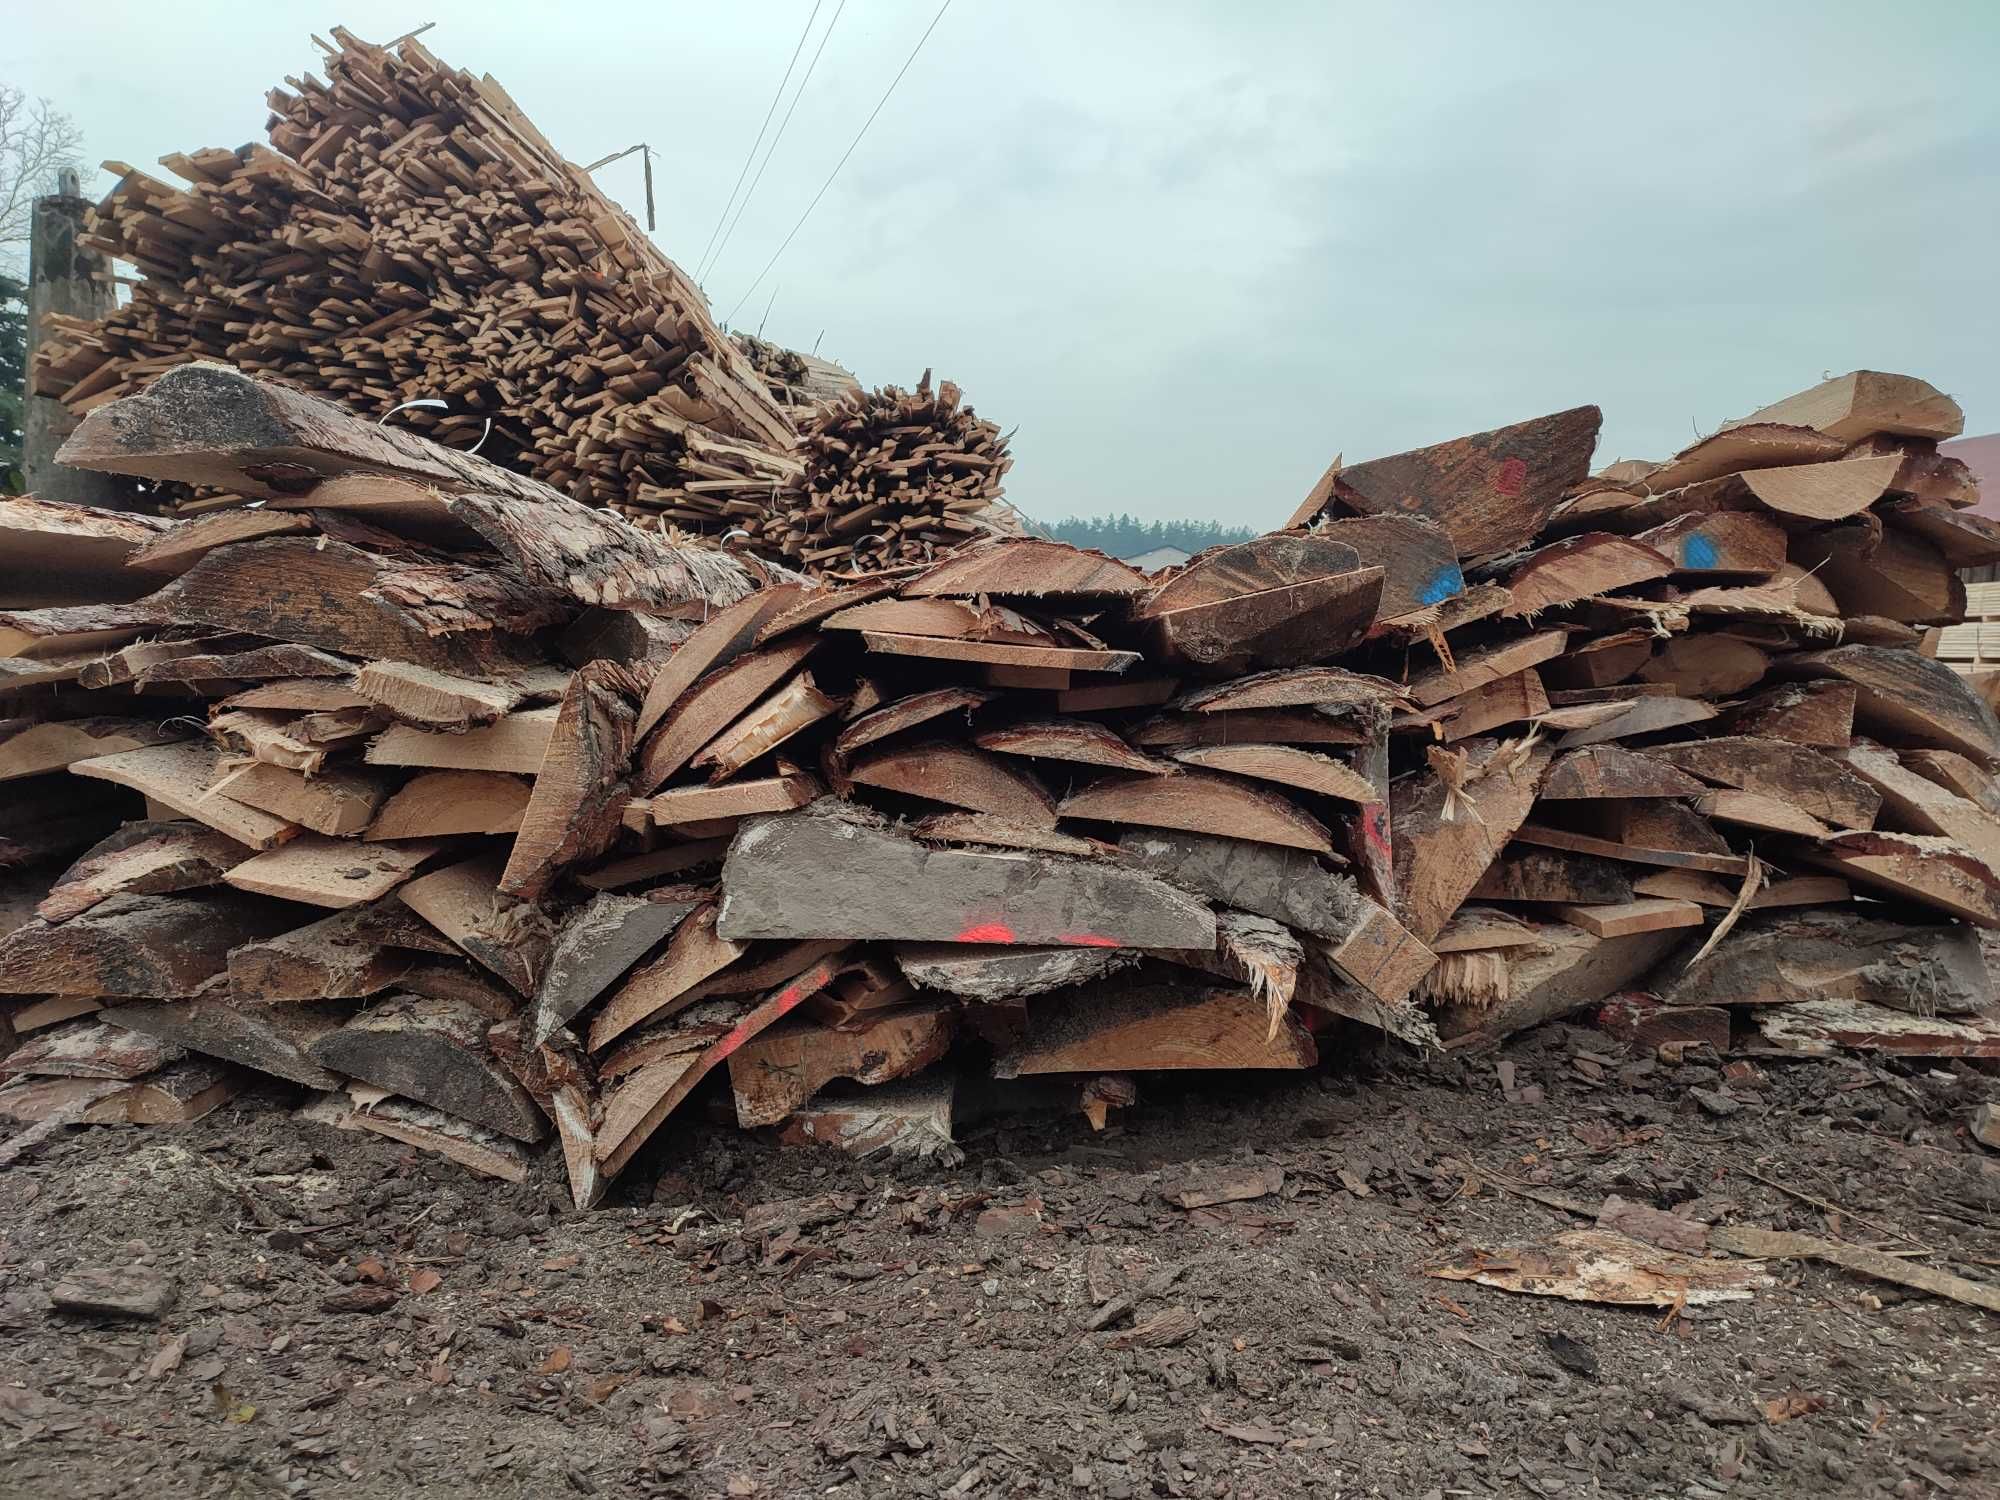 Węgiel 1100 zł tona.drewno woj obrzynki drzewo zrzyny węgiel